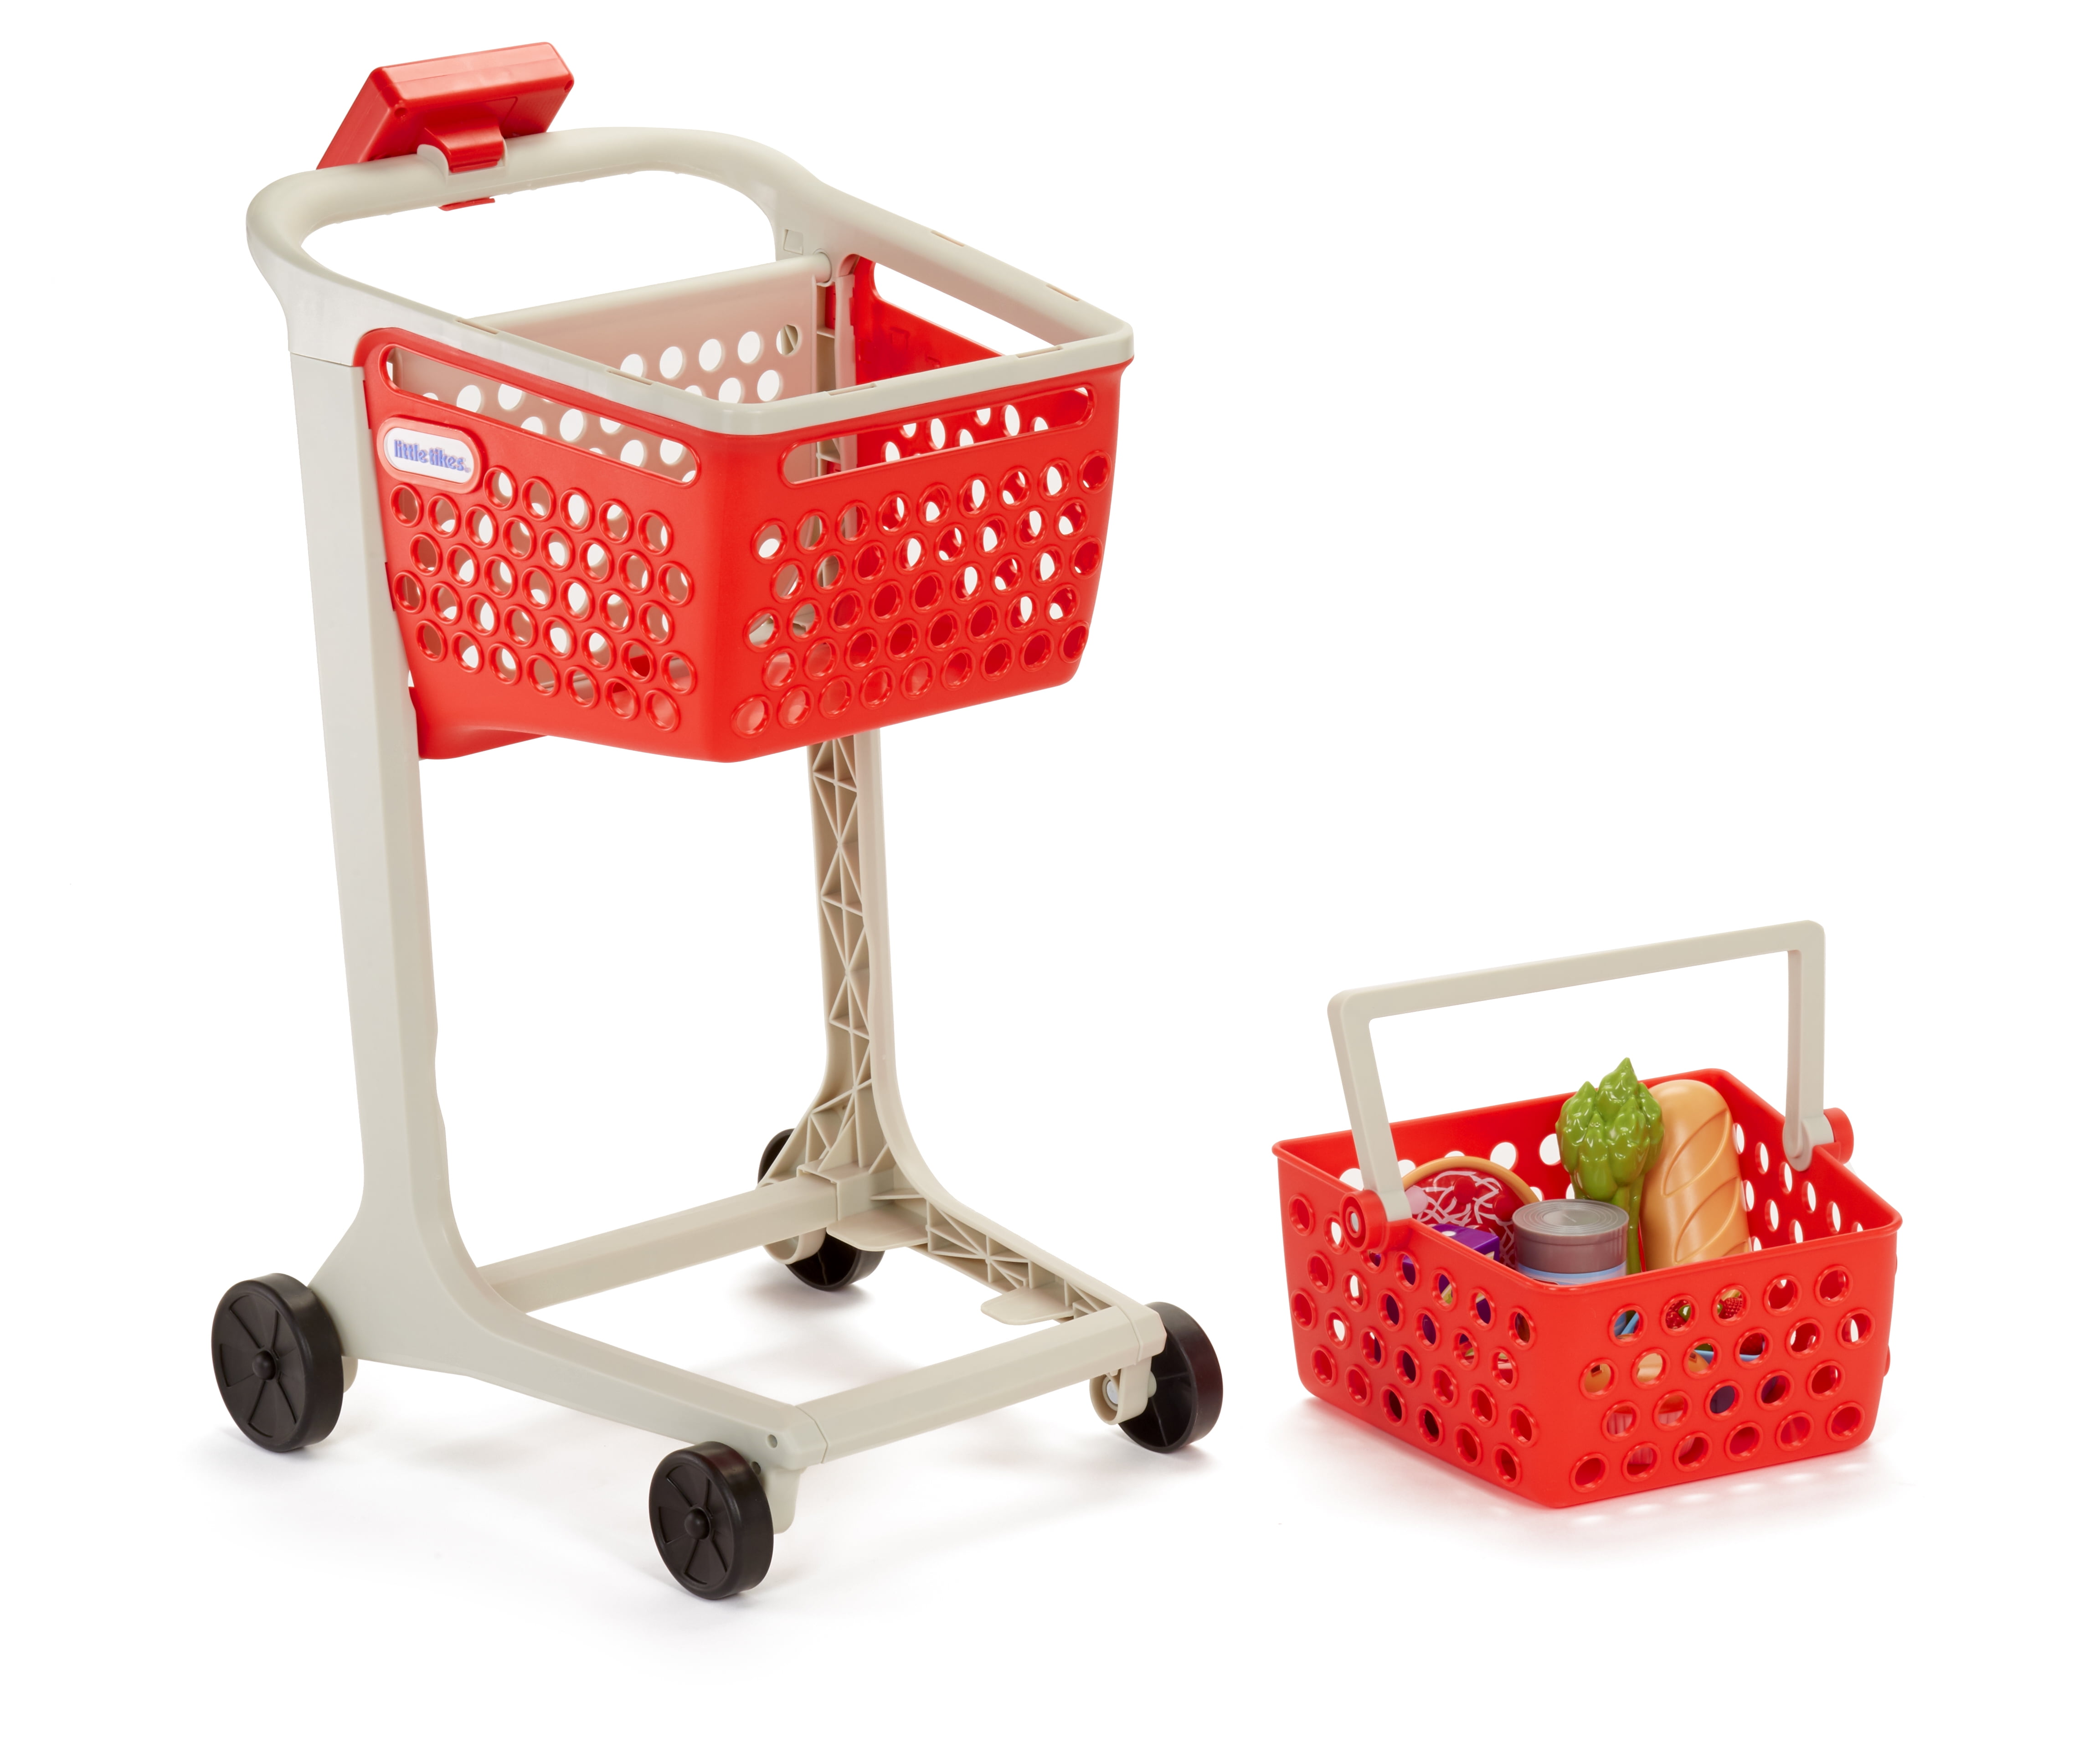 New Arshiner Children Kids Little Supermarket Shopping Cart with DNKR 